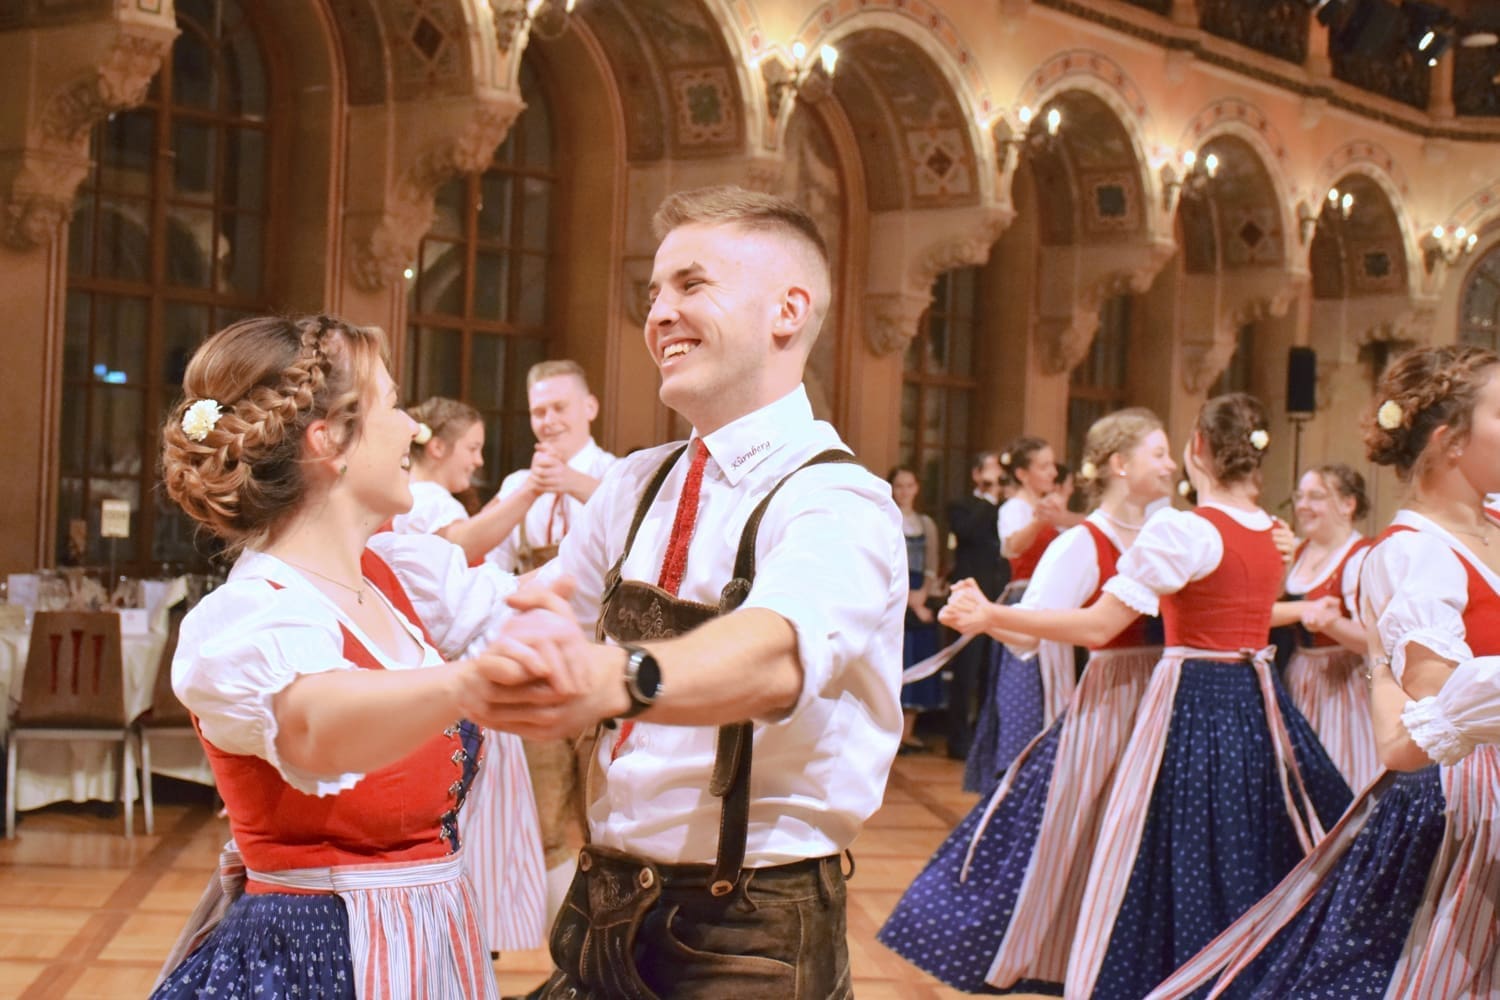 Tanzpaar beim Wiener Kathreintanz in traditioneller Tracht.